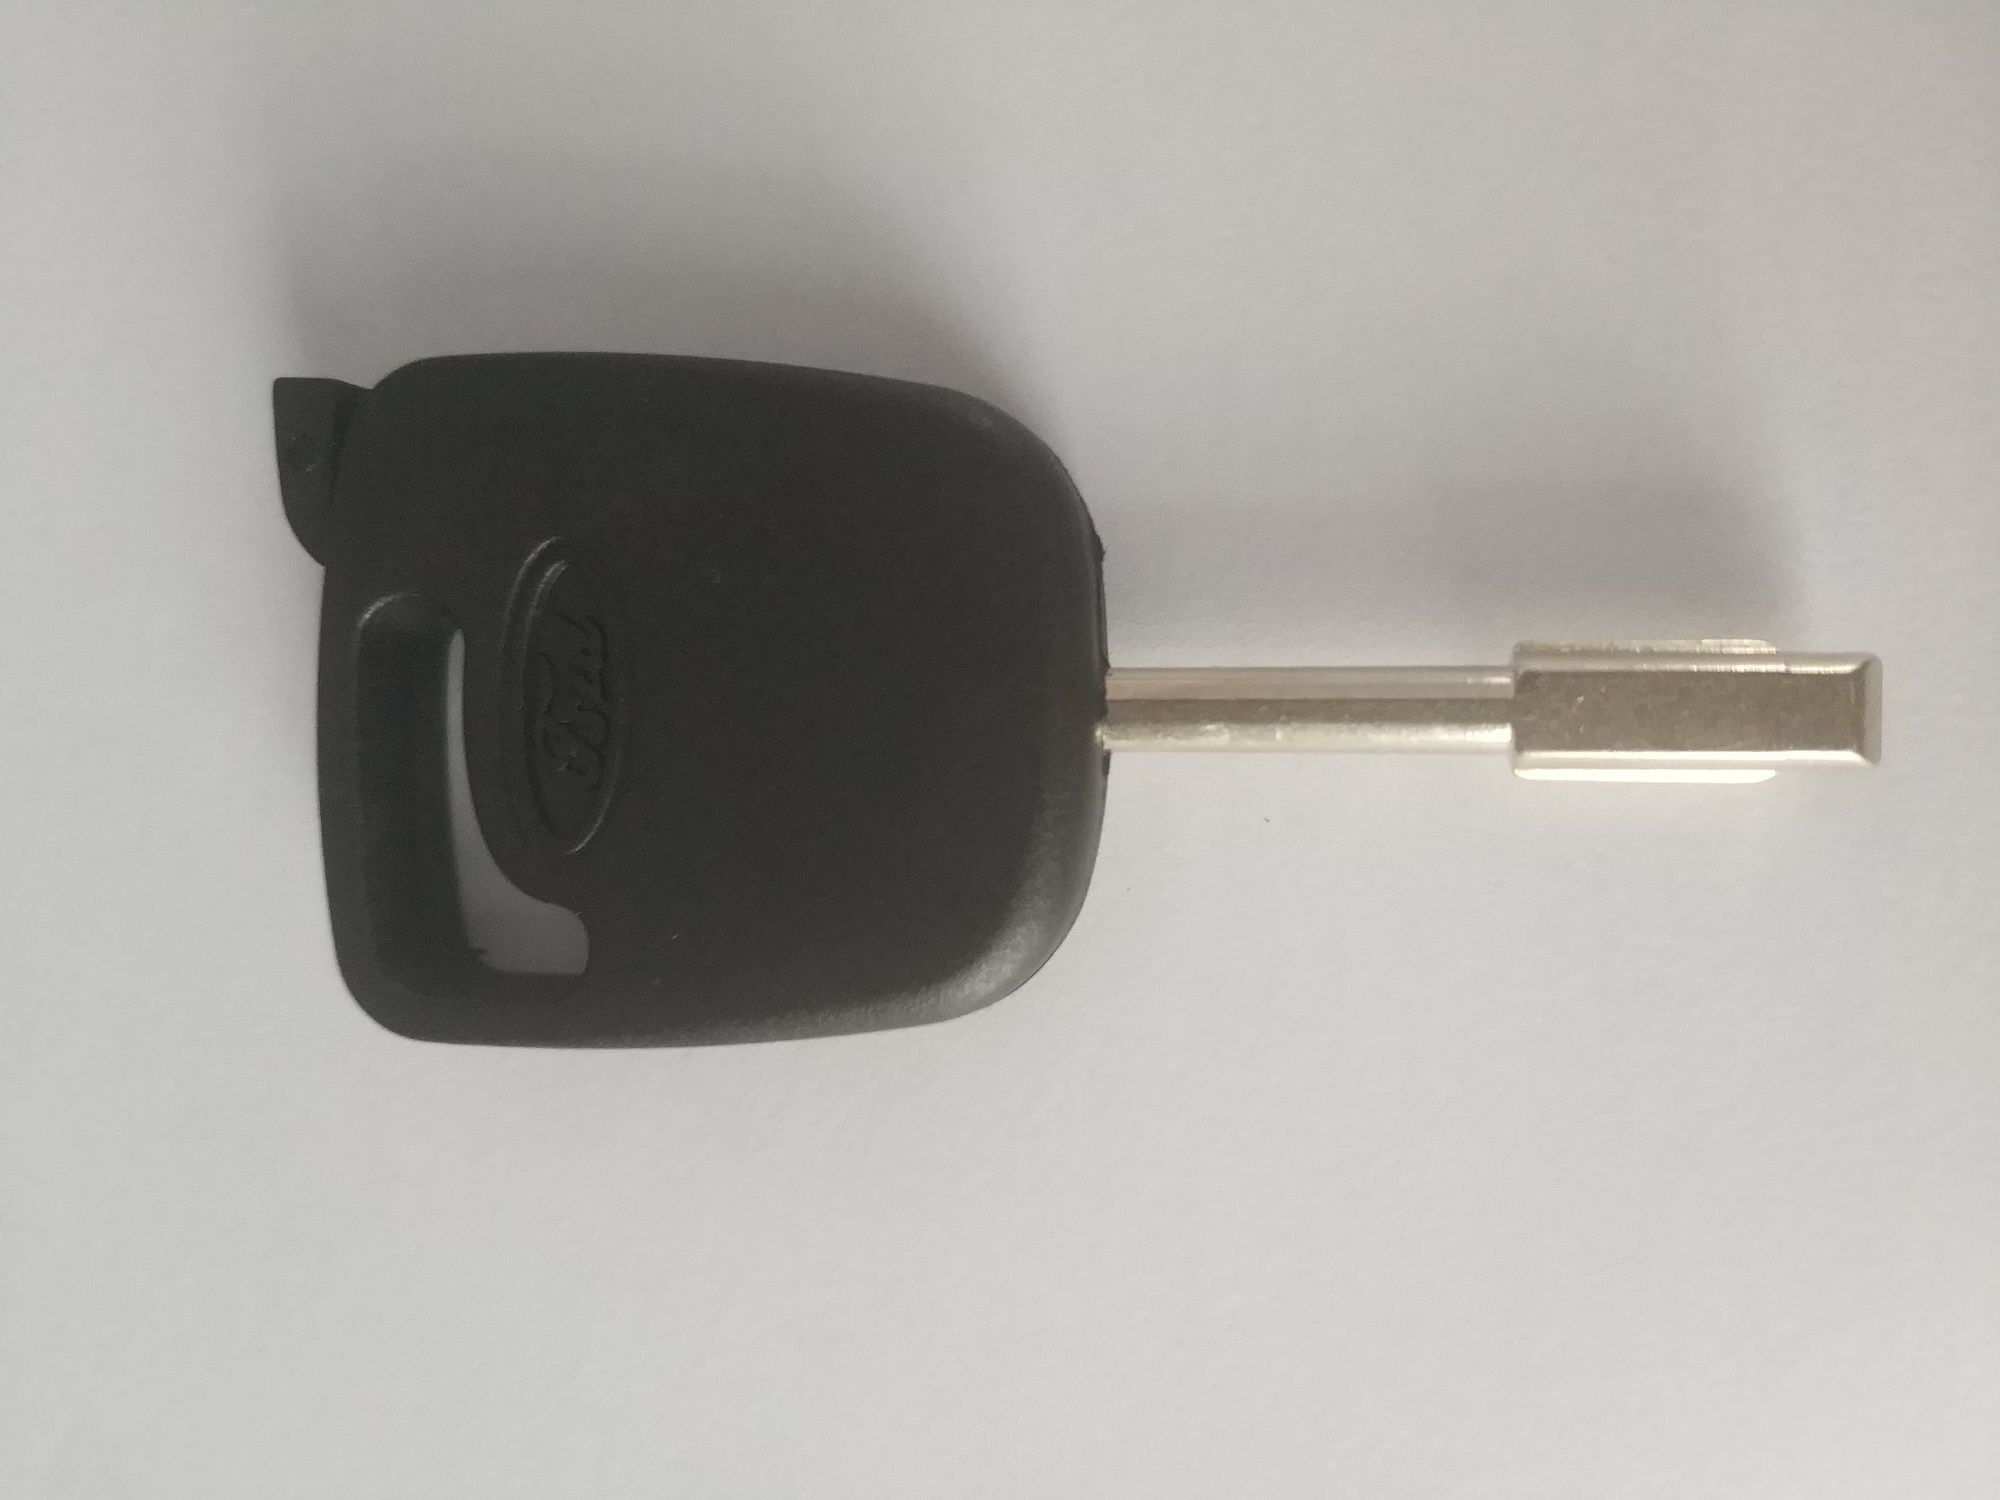 Обикновен ключ за Ford,с място за чип транспондер.